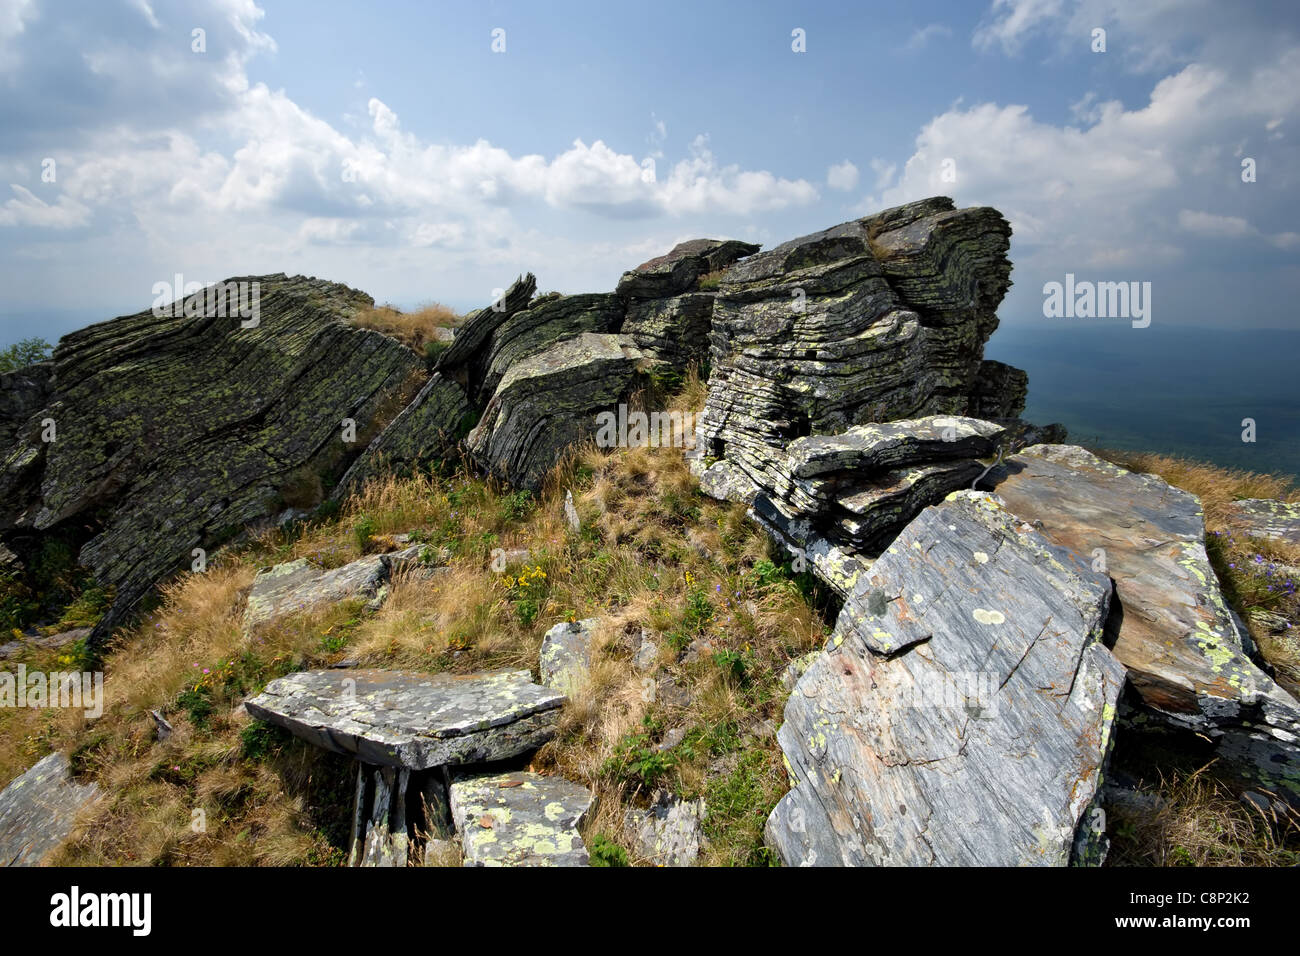 Rocce di intricati - strati di pietra al Urenga ridge. Sud monti Urali. La regione di Celjabinsk. La Russia. Foto Stock